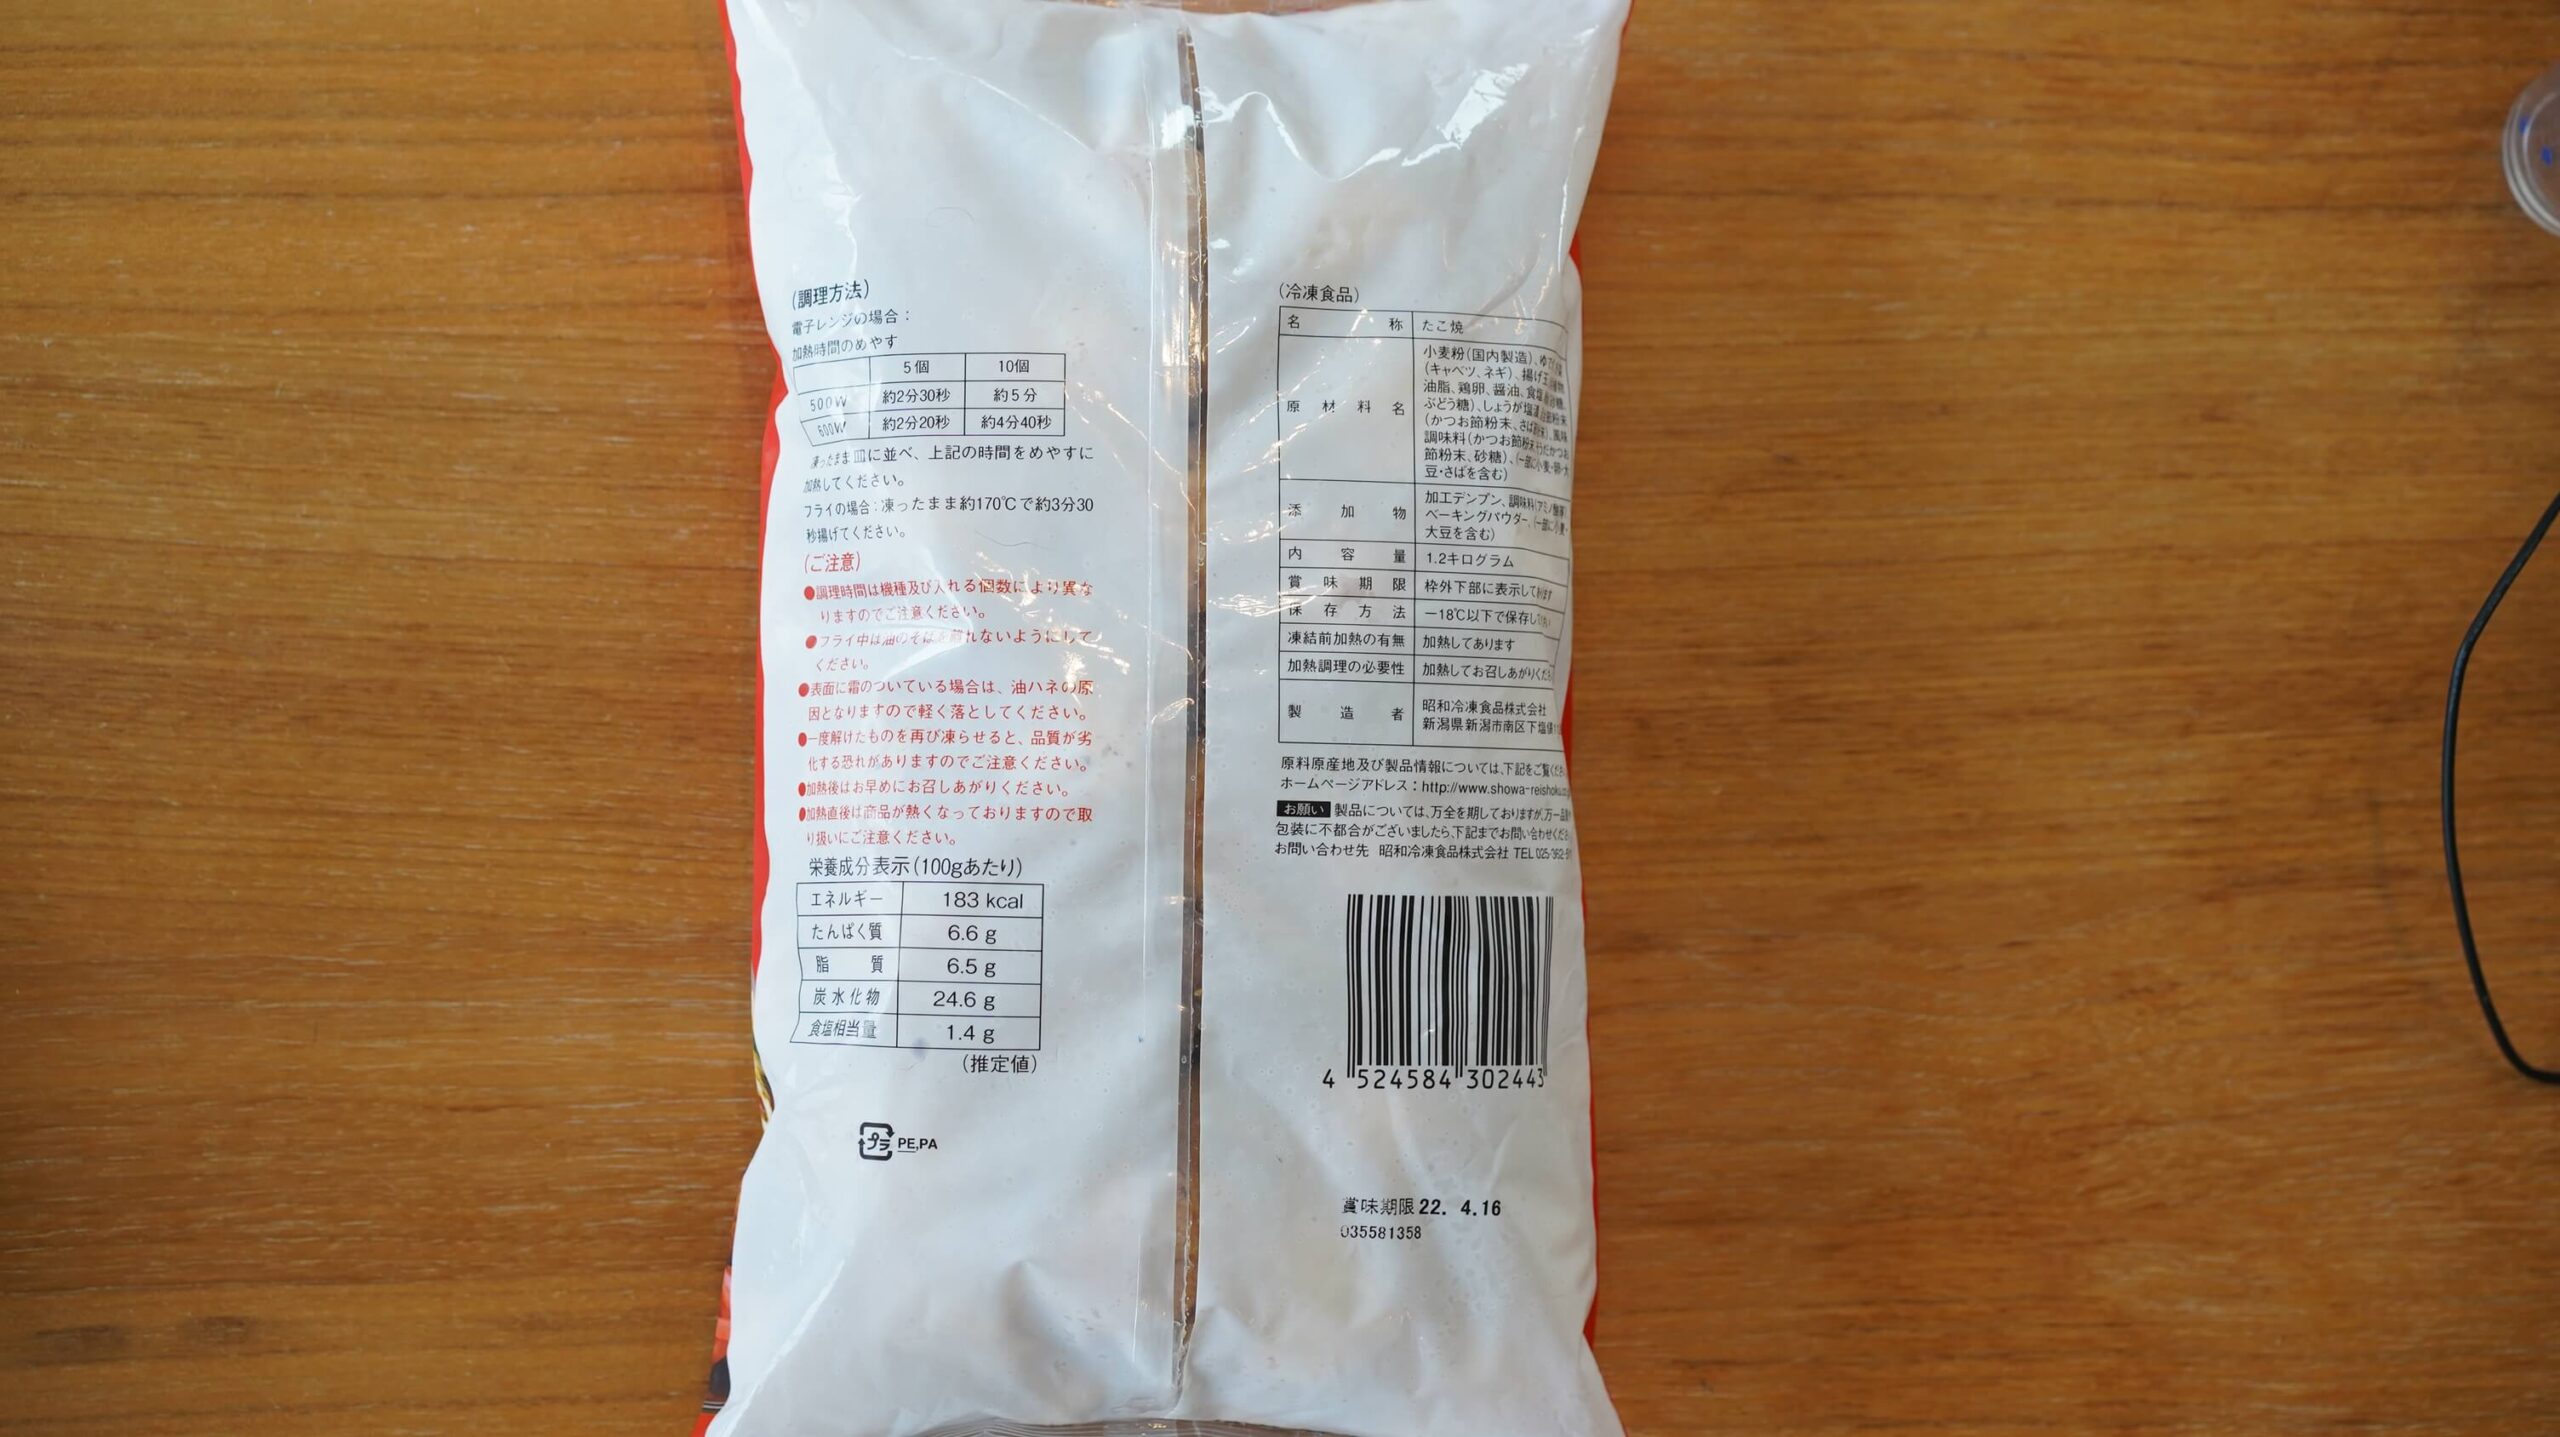 コストコの冷凍食品「たこ焼き」のパッケージ裏面の写真